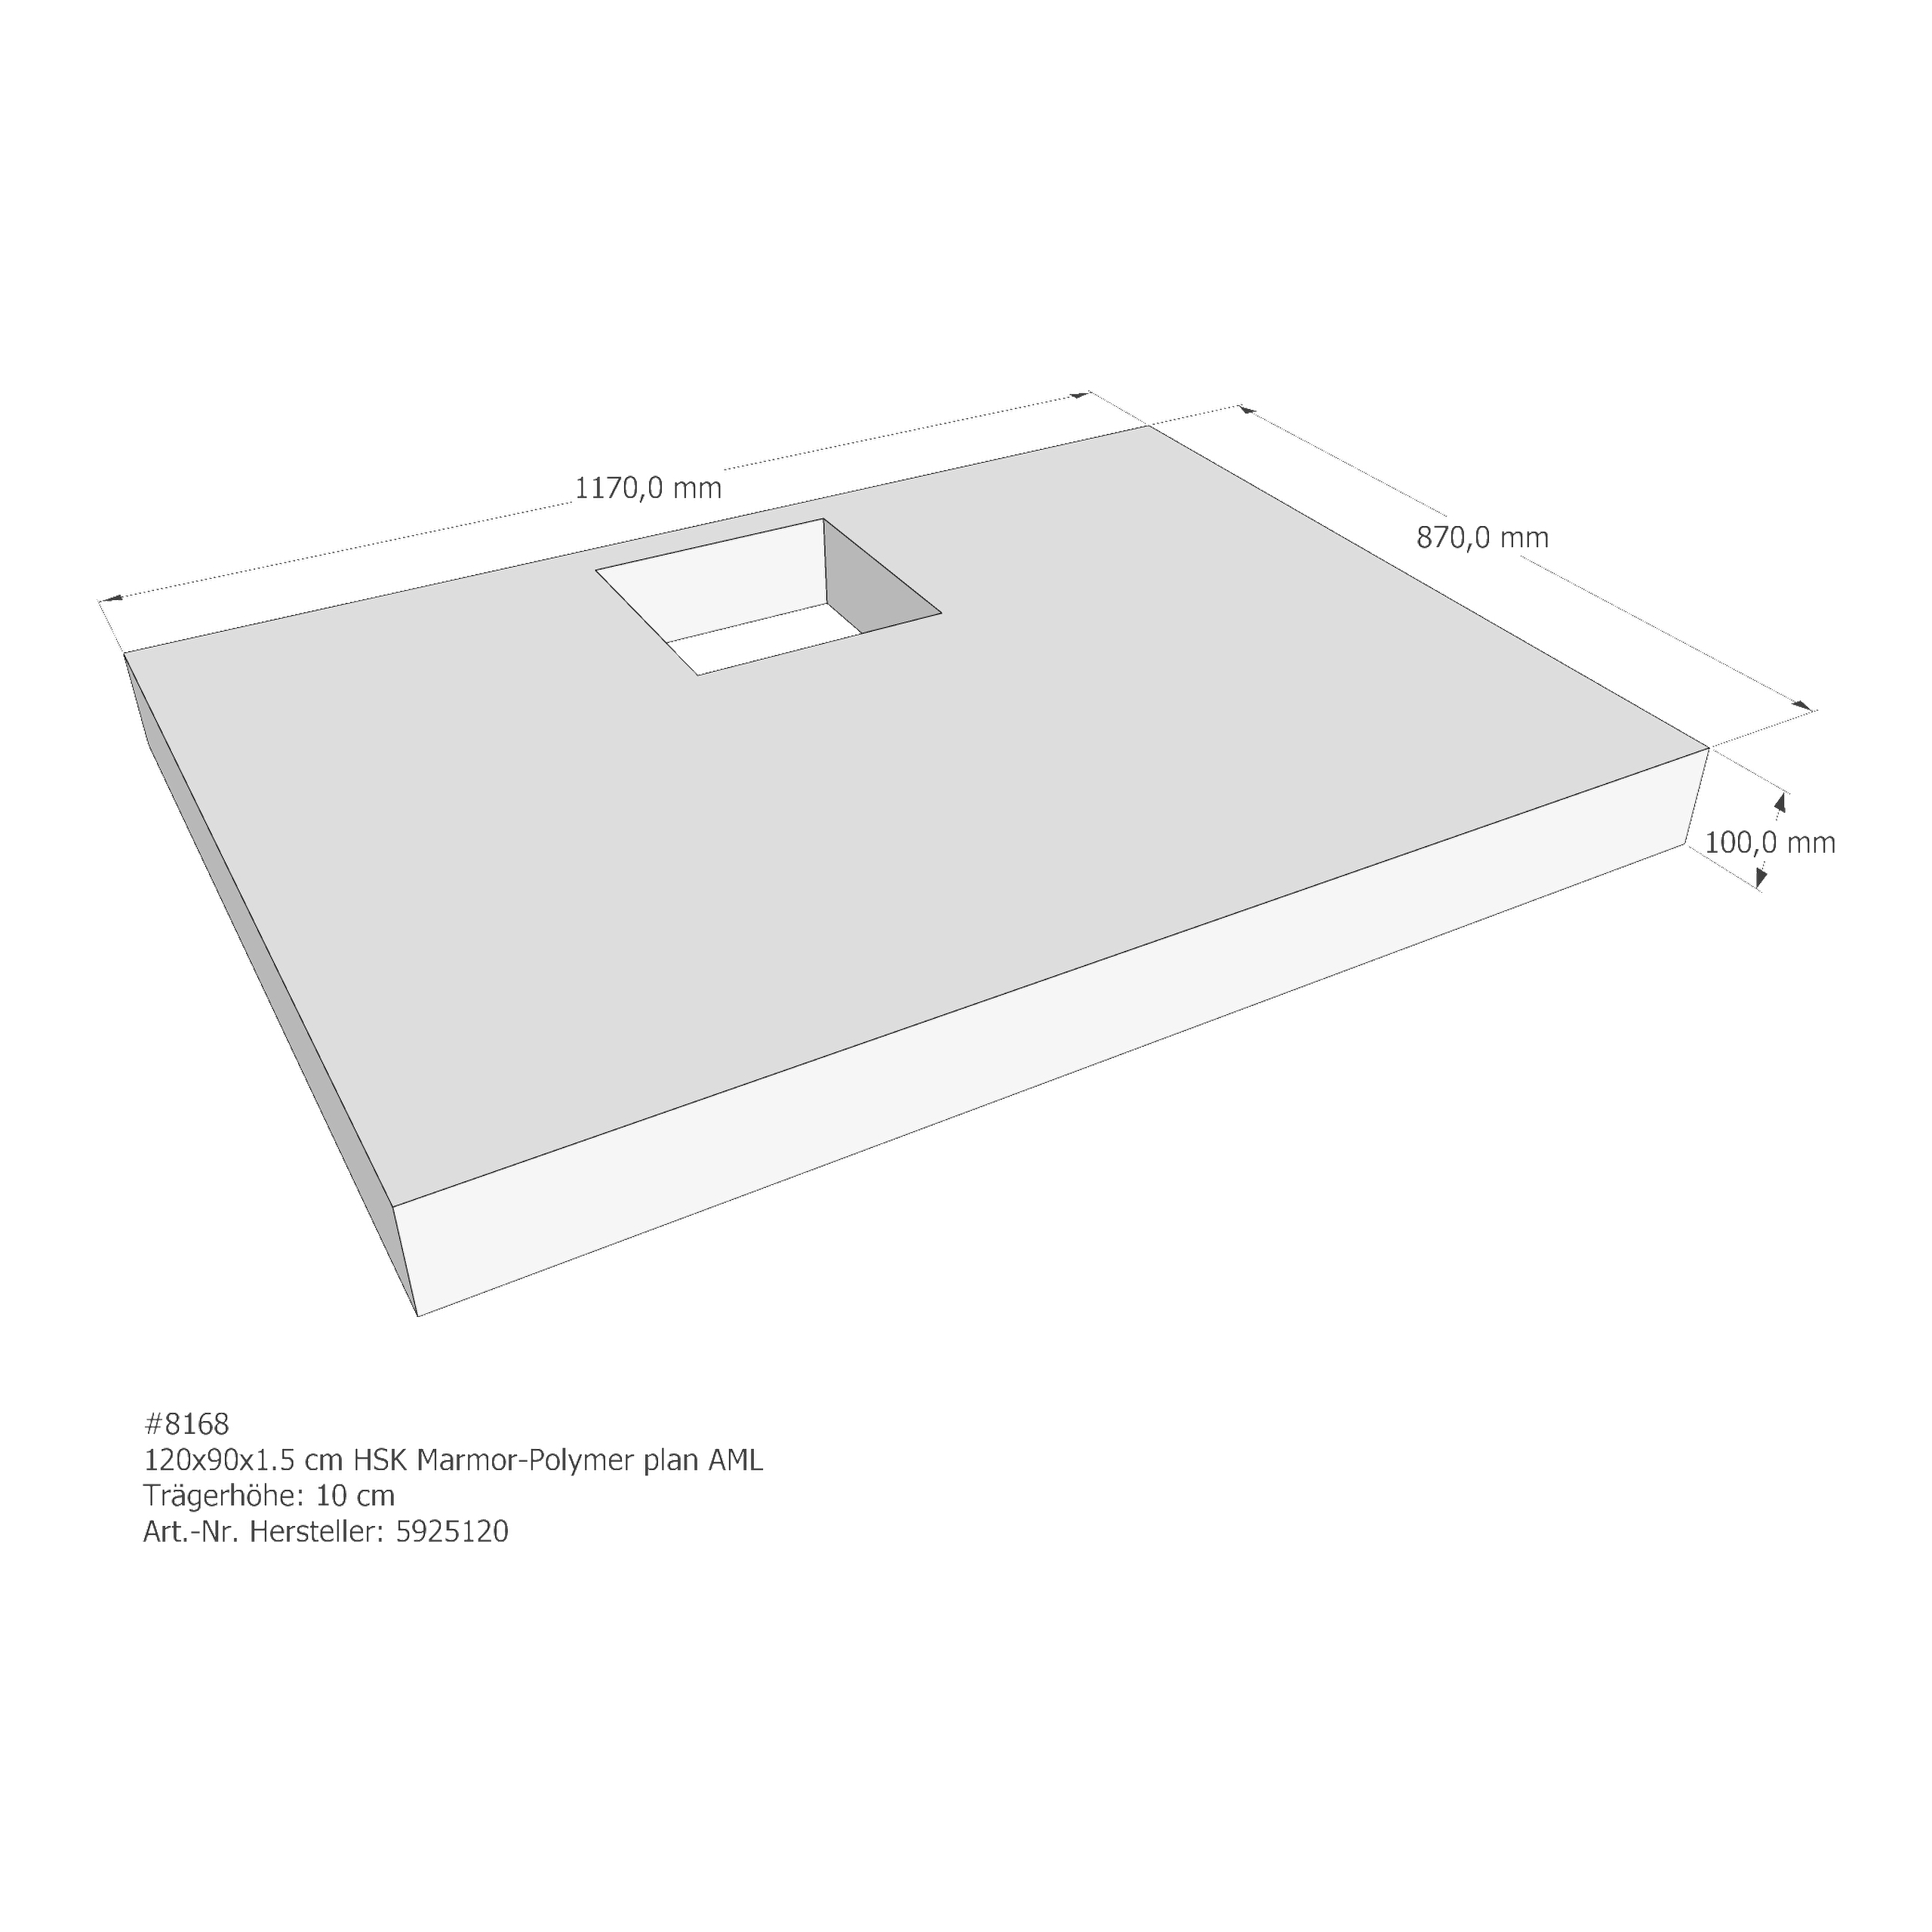 Duschwannenträger HSK Marmor-Polymer plan 120x90x1,5 cm AML